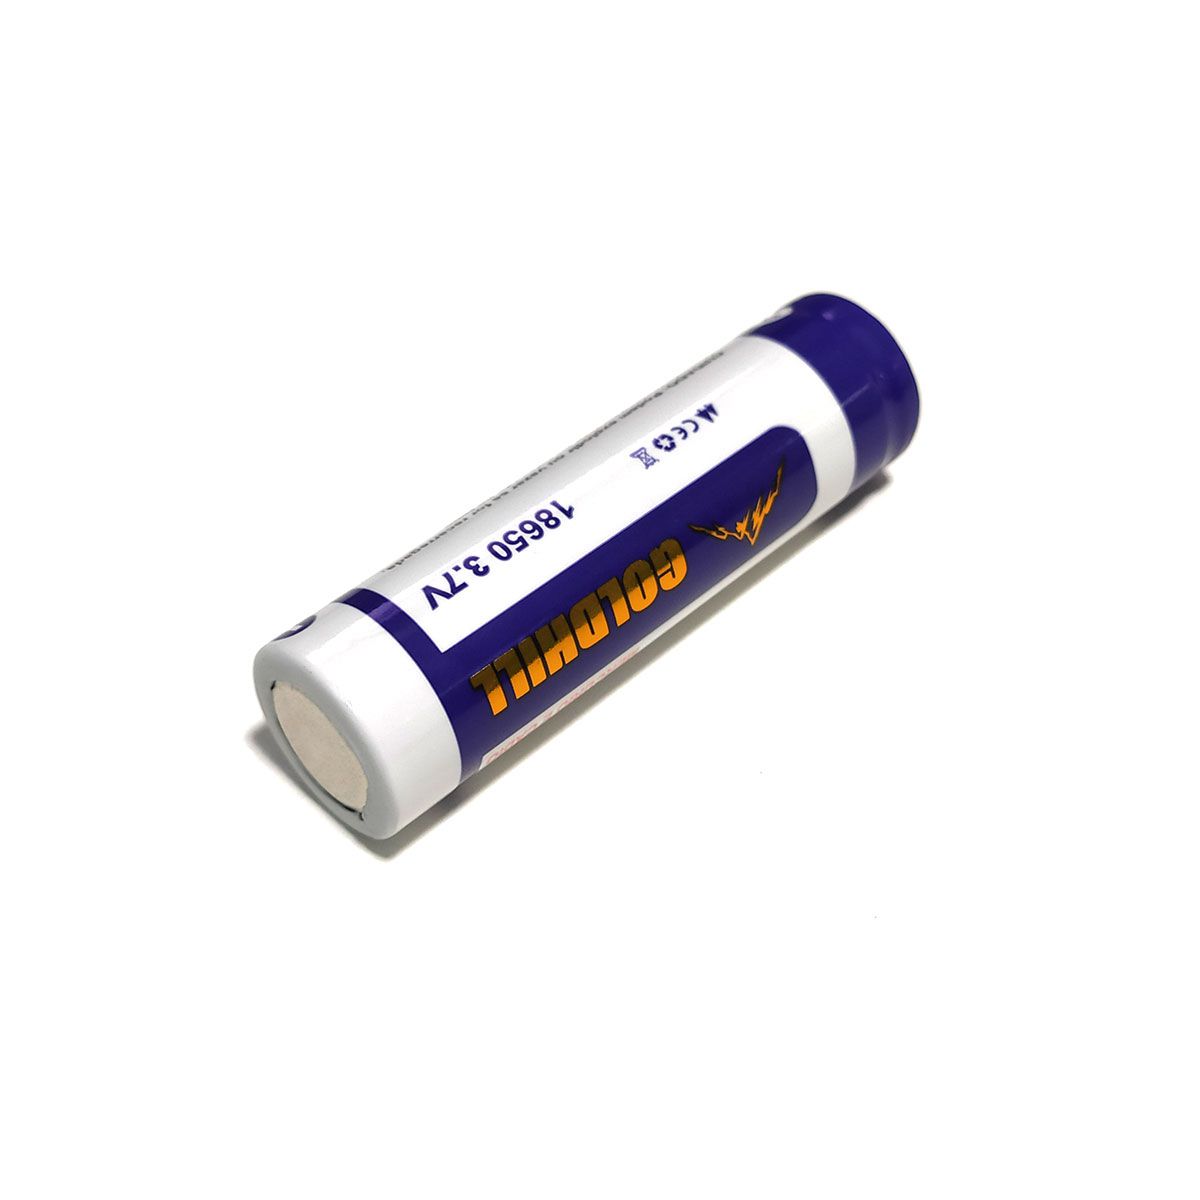 2x Bateria 3,7V 18650 de Lítio Recarregável - GoldHill